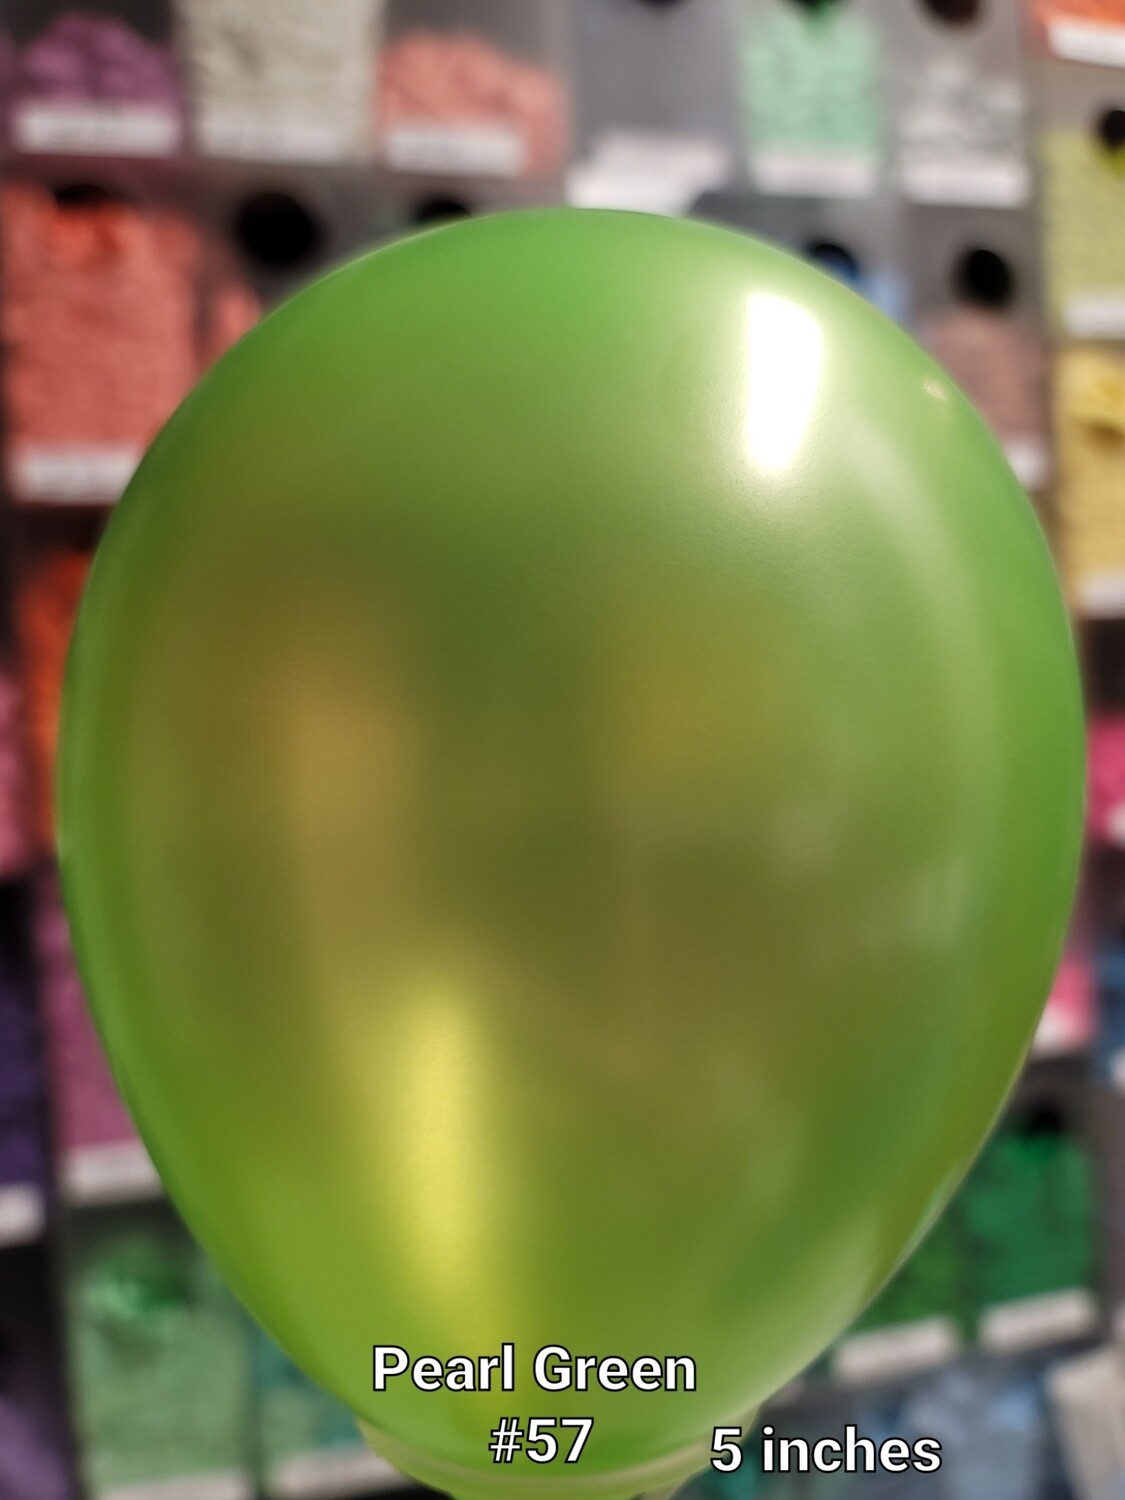 Pearl Green balloon